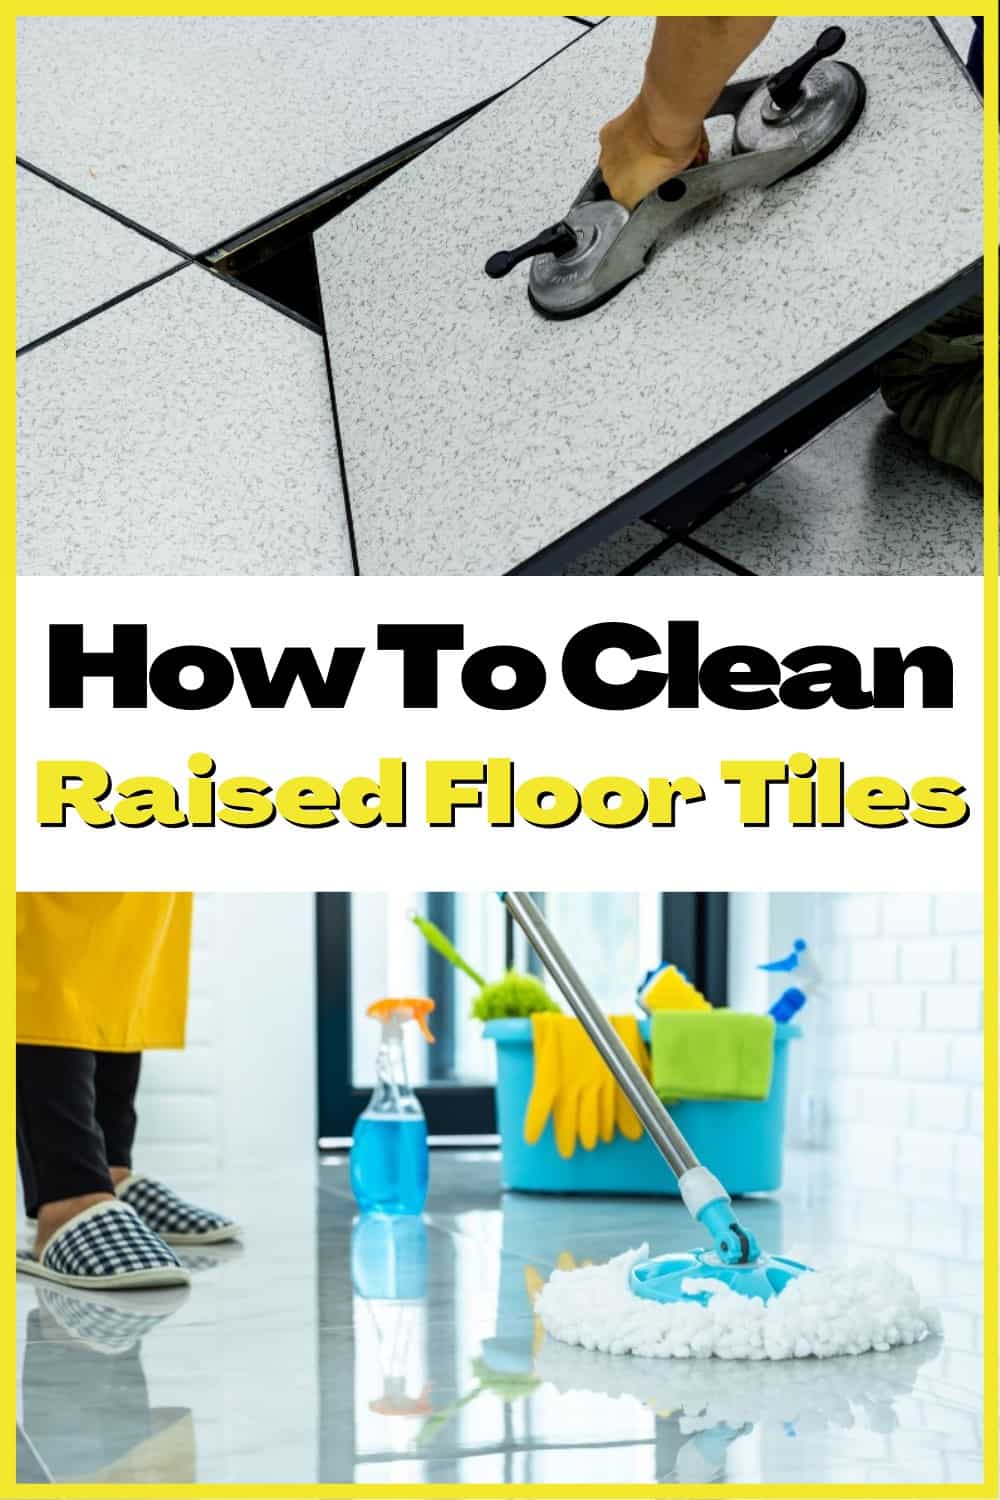 Easy Guide to Clean Raised Floor Tiles